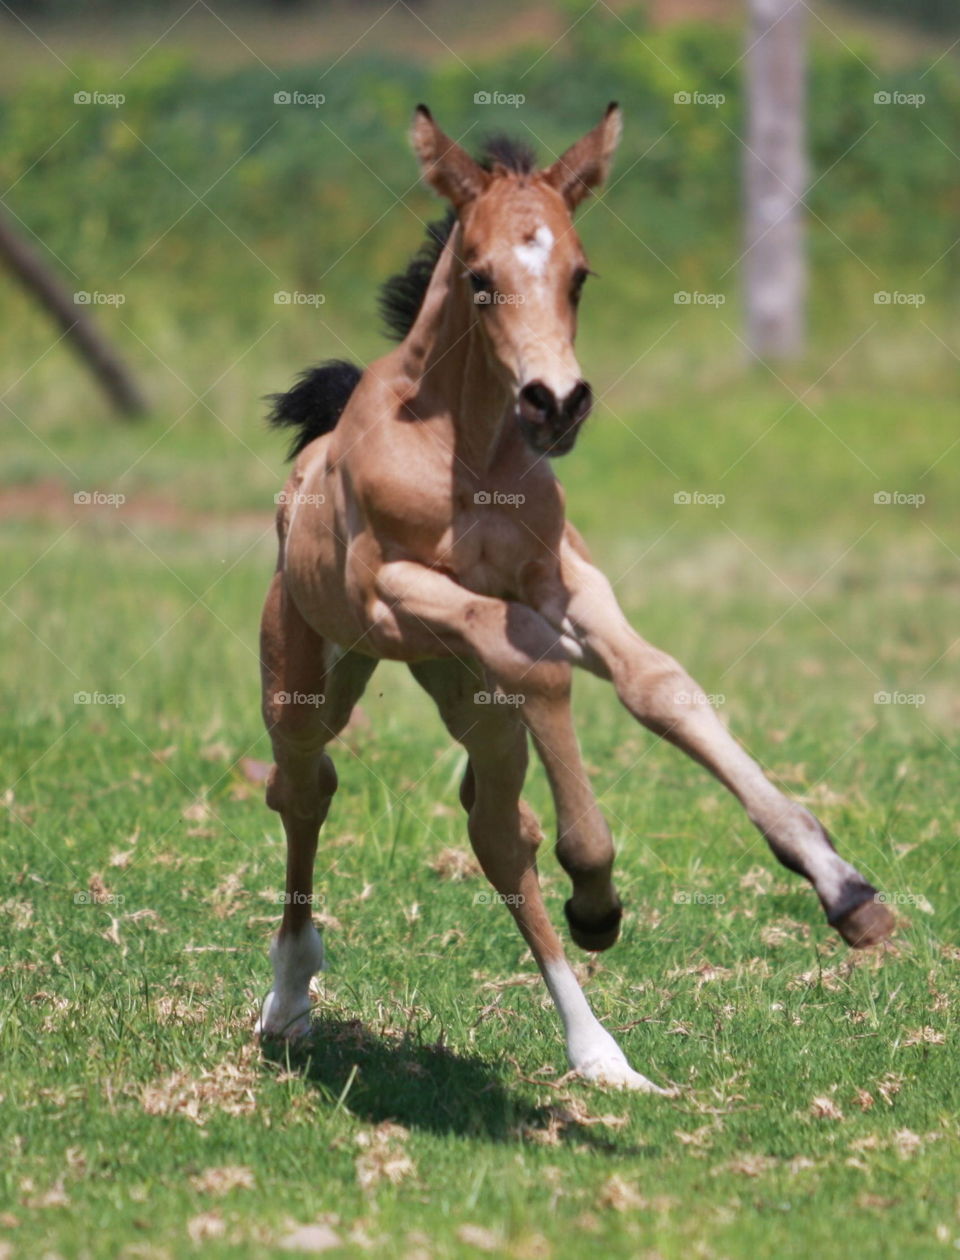 Cute little foal running